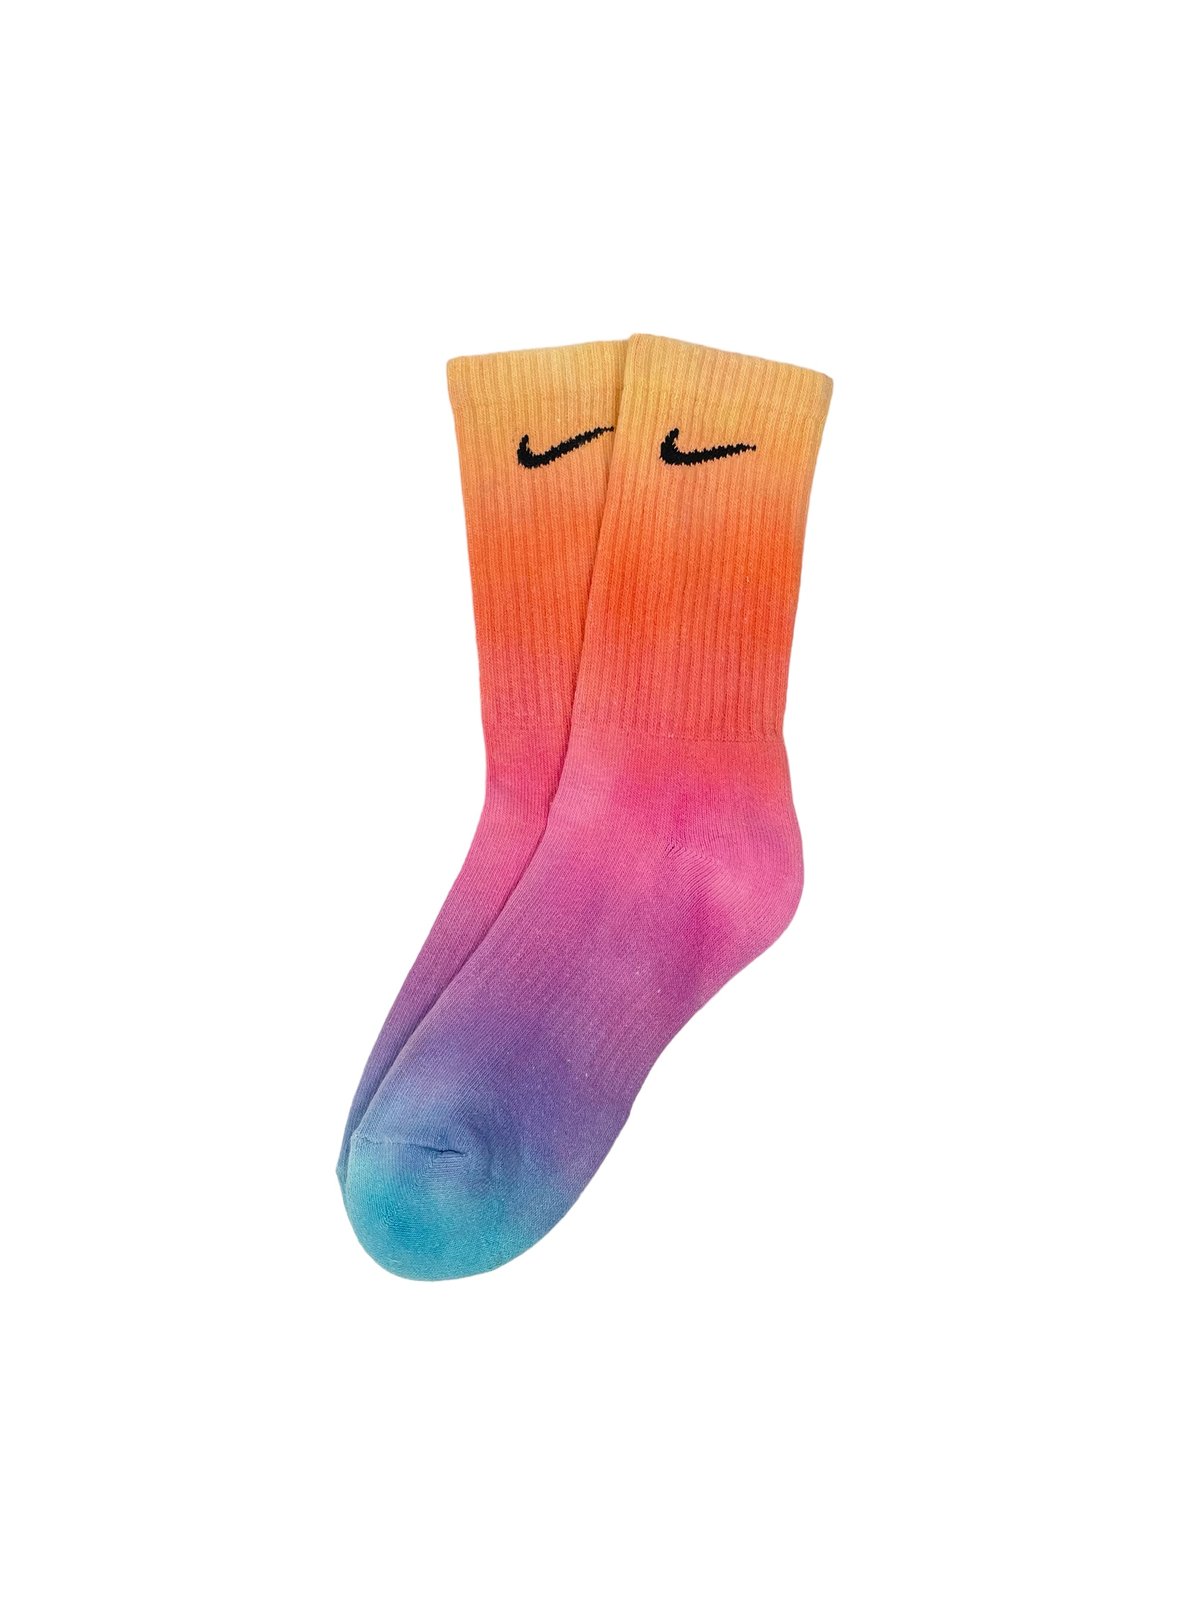 Image of Nike Socks Dyed Sunset